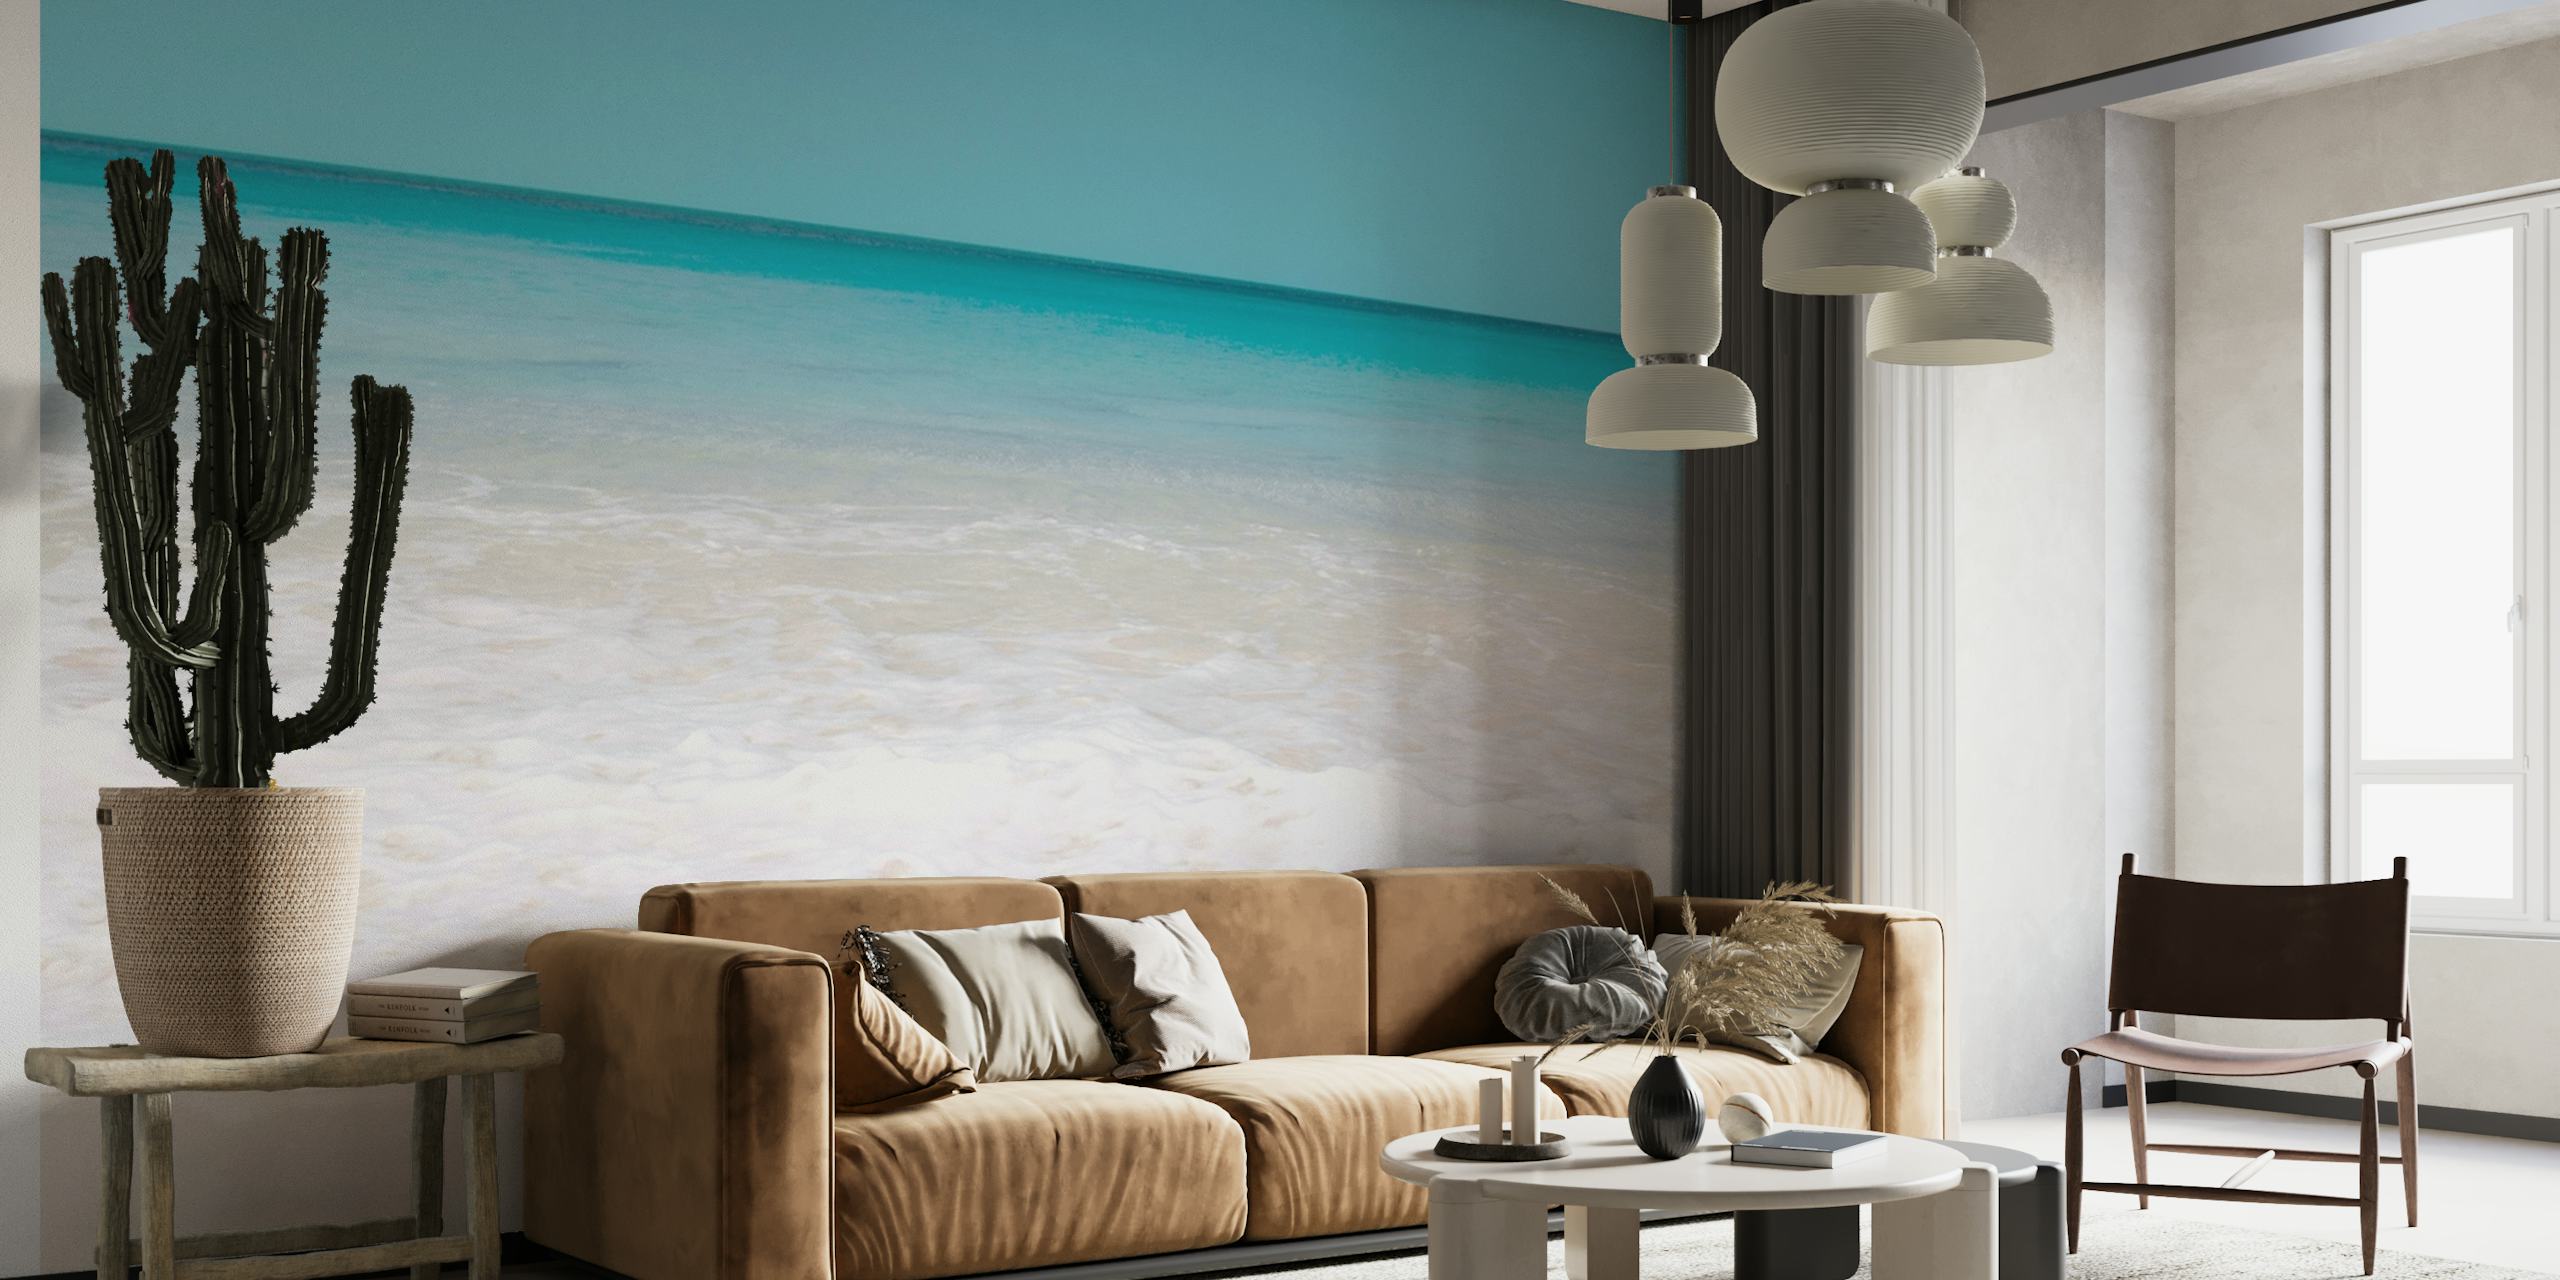 Fototapete mit karibischem Strand, die weißen Sand und türkisfarbenes Meerwasser zeigt